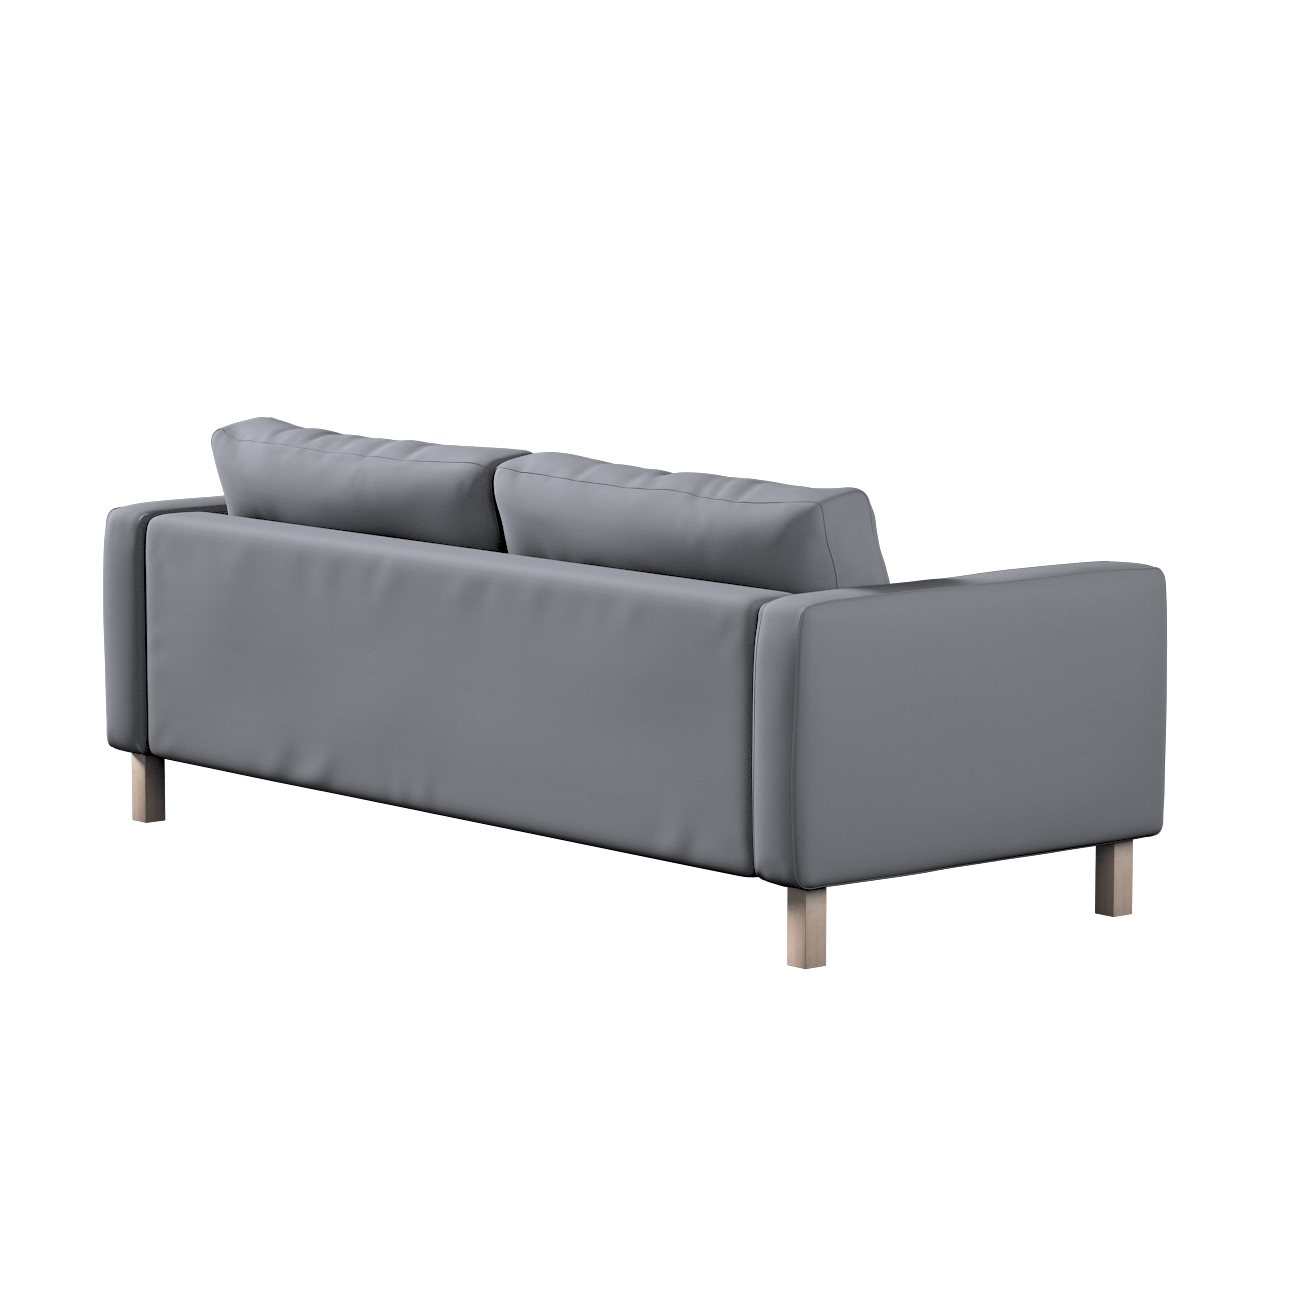 Bezug für Karlstad 3-Sitzer Sofa nicht ausklappbar, kurz, silbergrau, Bezug günstig online kaufen